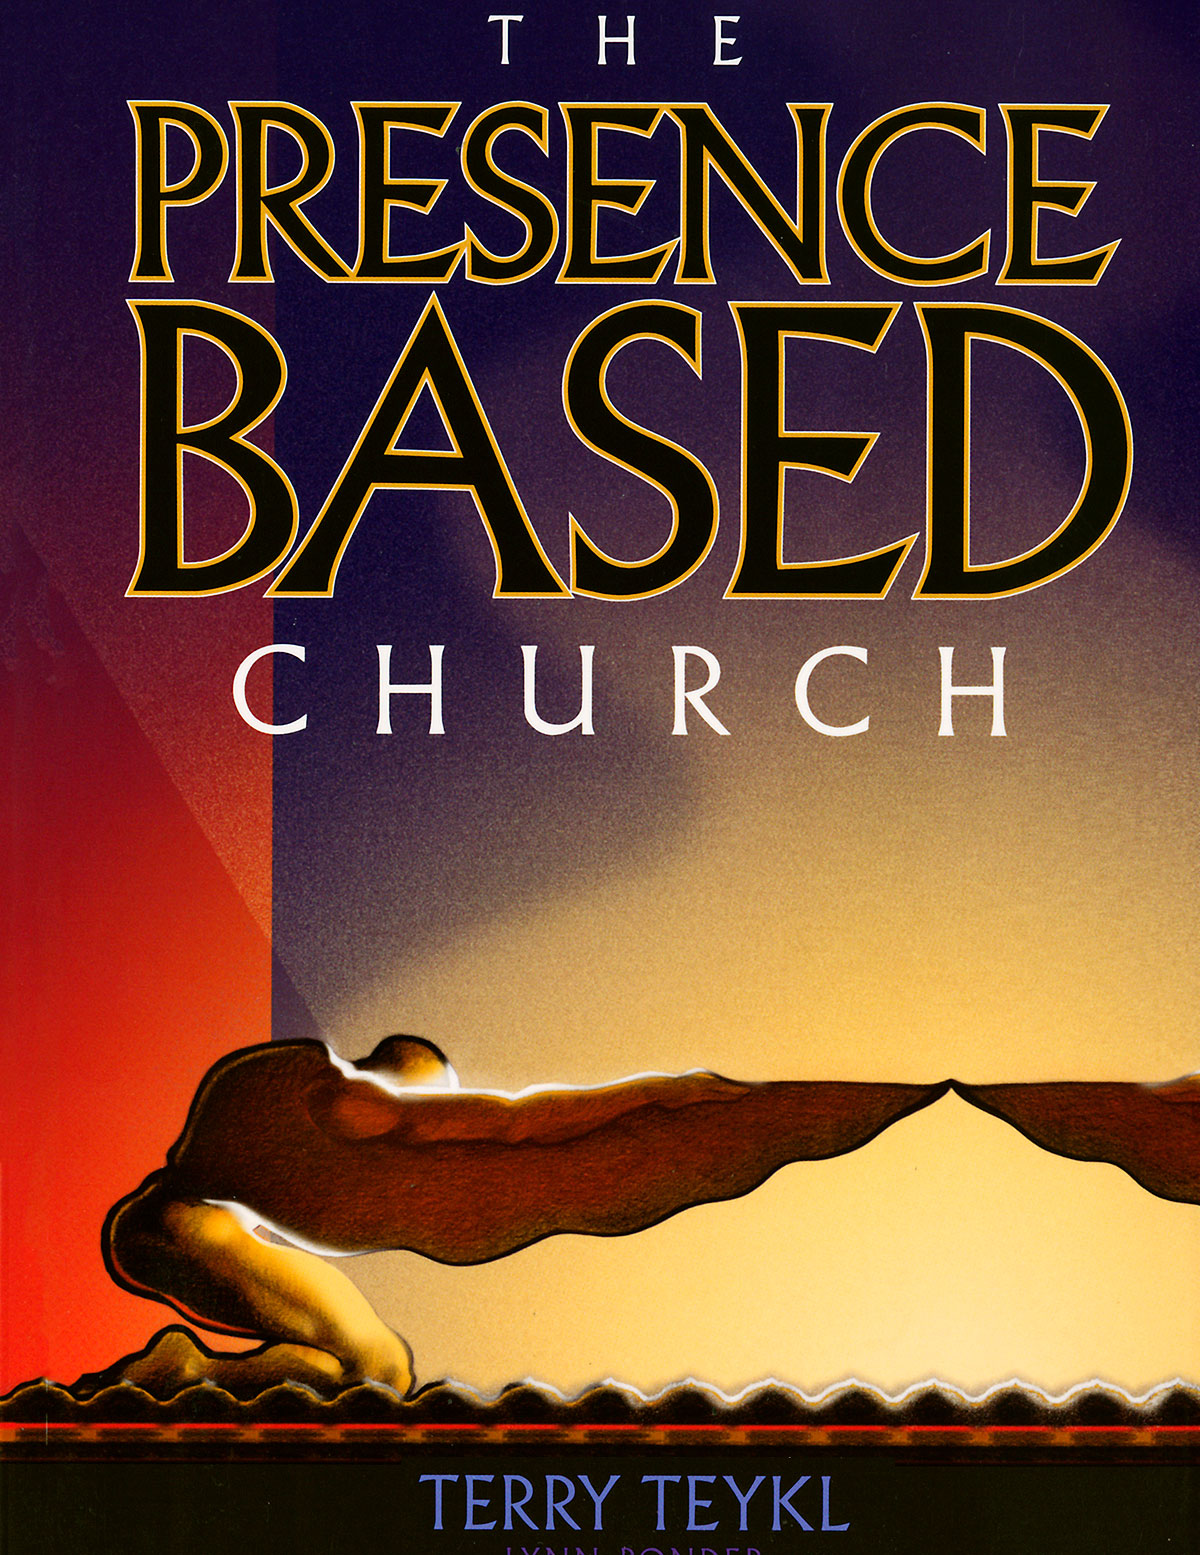 alt="the presence based church, book"